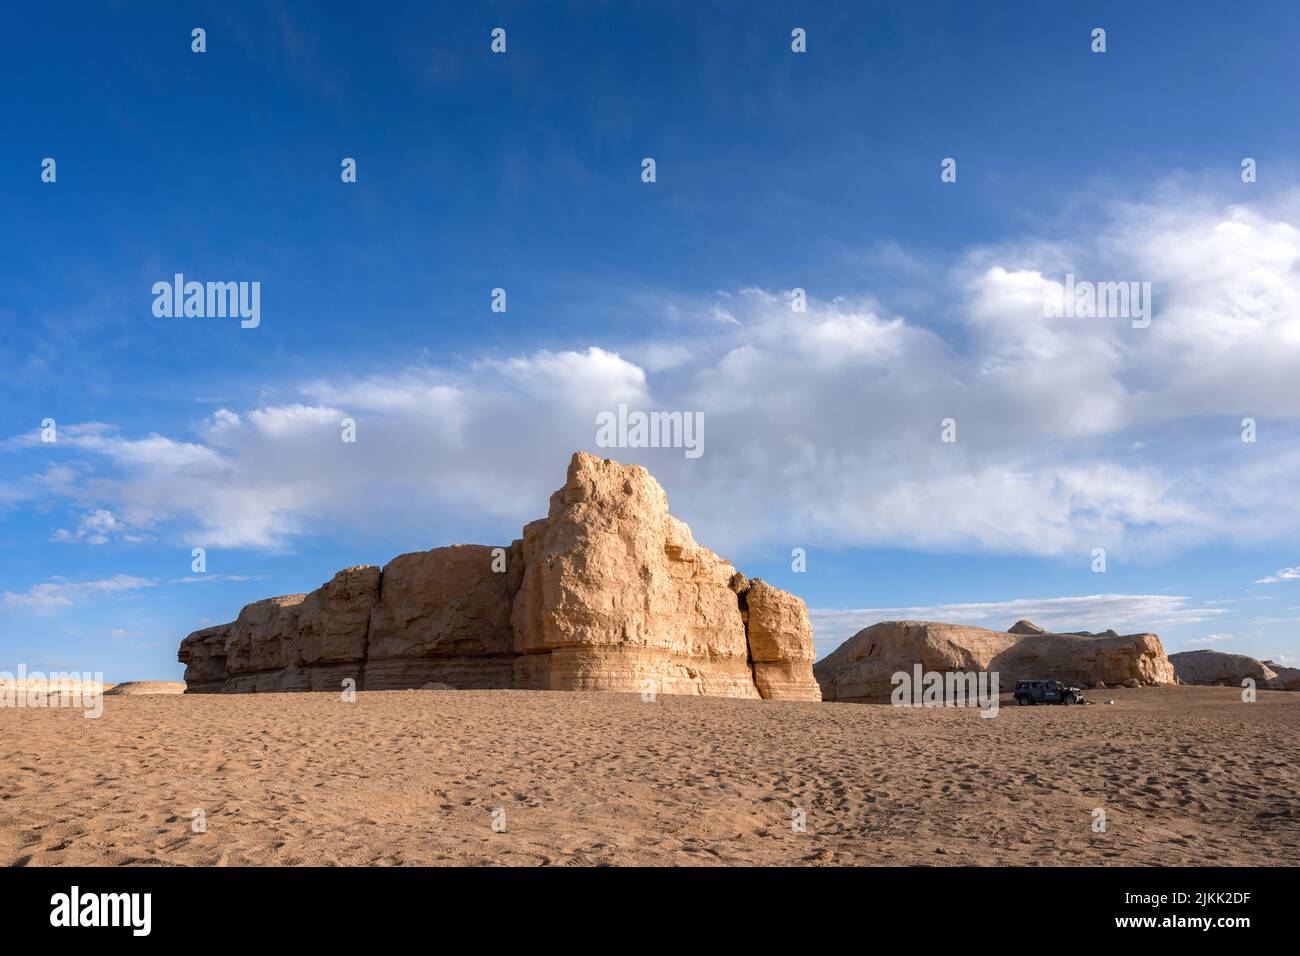 Die schöne Aussicht auf die Sandsteine in der Wüste gegen den blauen Himmel. Stockfoto